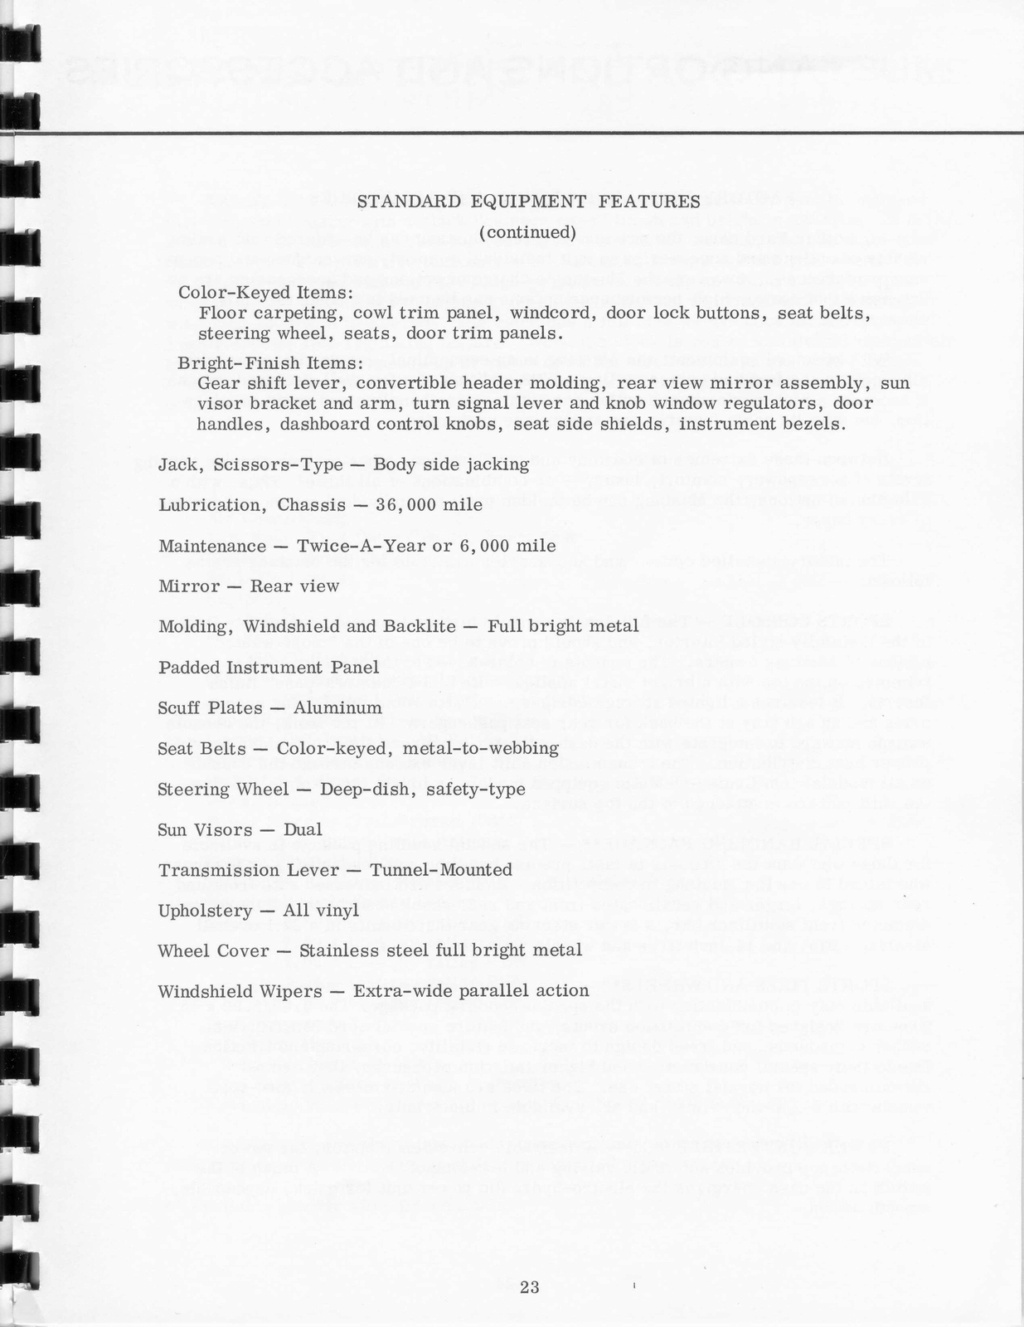 Communiquer de presse: Lancement de la nouvelle Mustang avril 1964 (Anglais)  N_196431